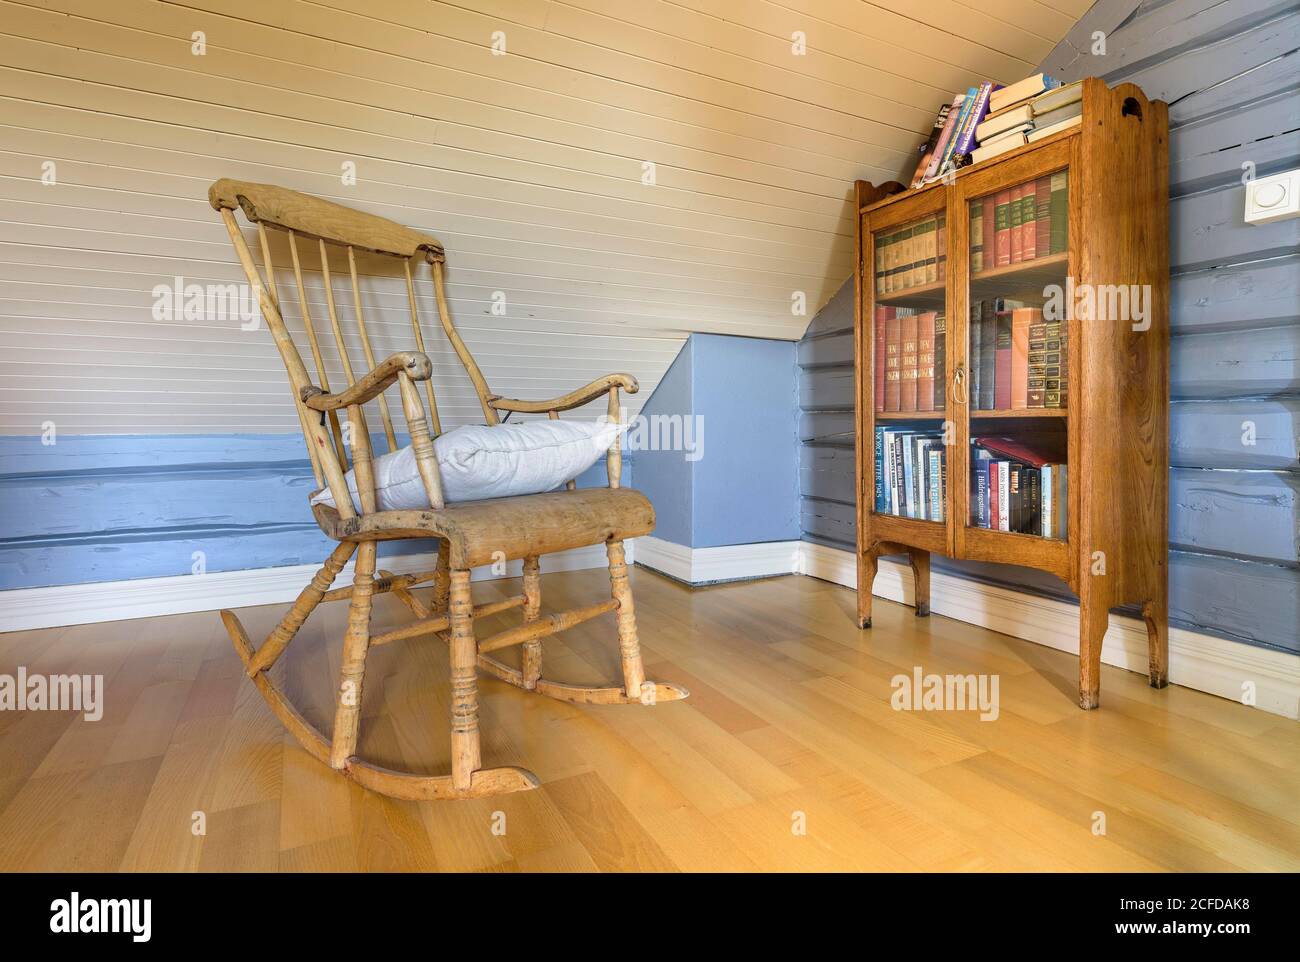 Innenansicht des Wohnzimmerdetails traditionelles norwegisches Holzhaus, Holzstuhl und Bücherregal, Nordland, Norwegen Stockfoto